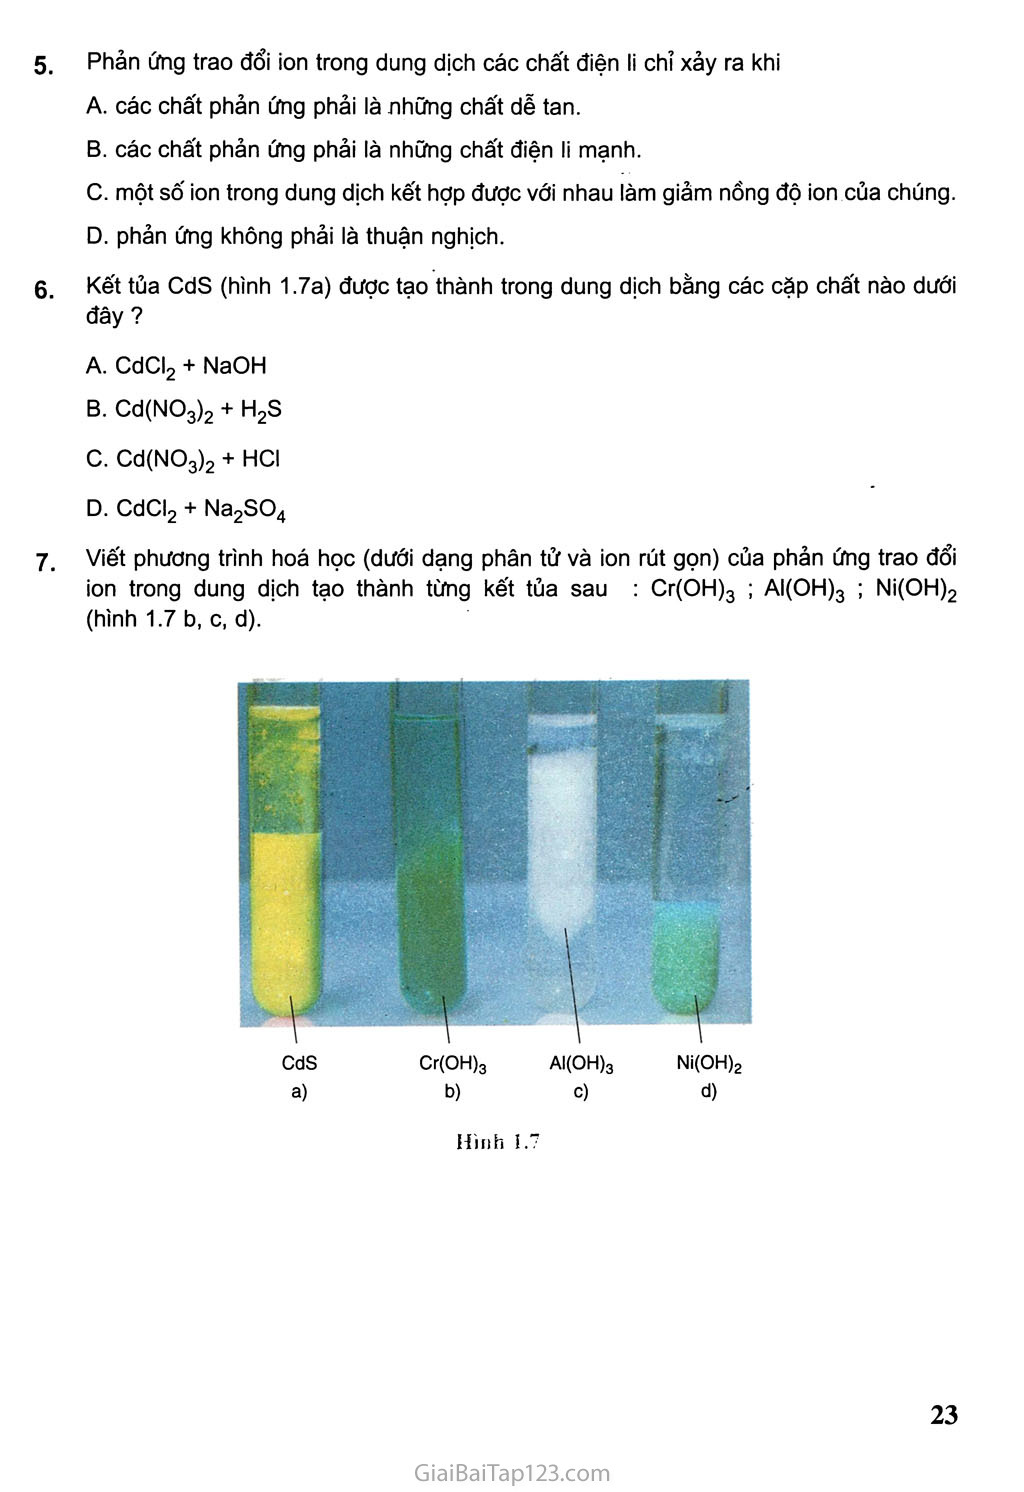 Bài 5: Luyện tập: Axit, bazơ và muối - Phản ứng trao đổi ion trong dung dịch các chất điện li trang 3